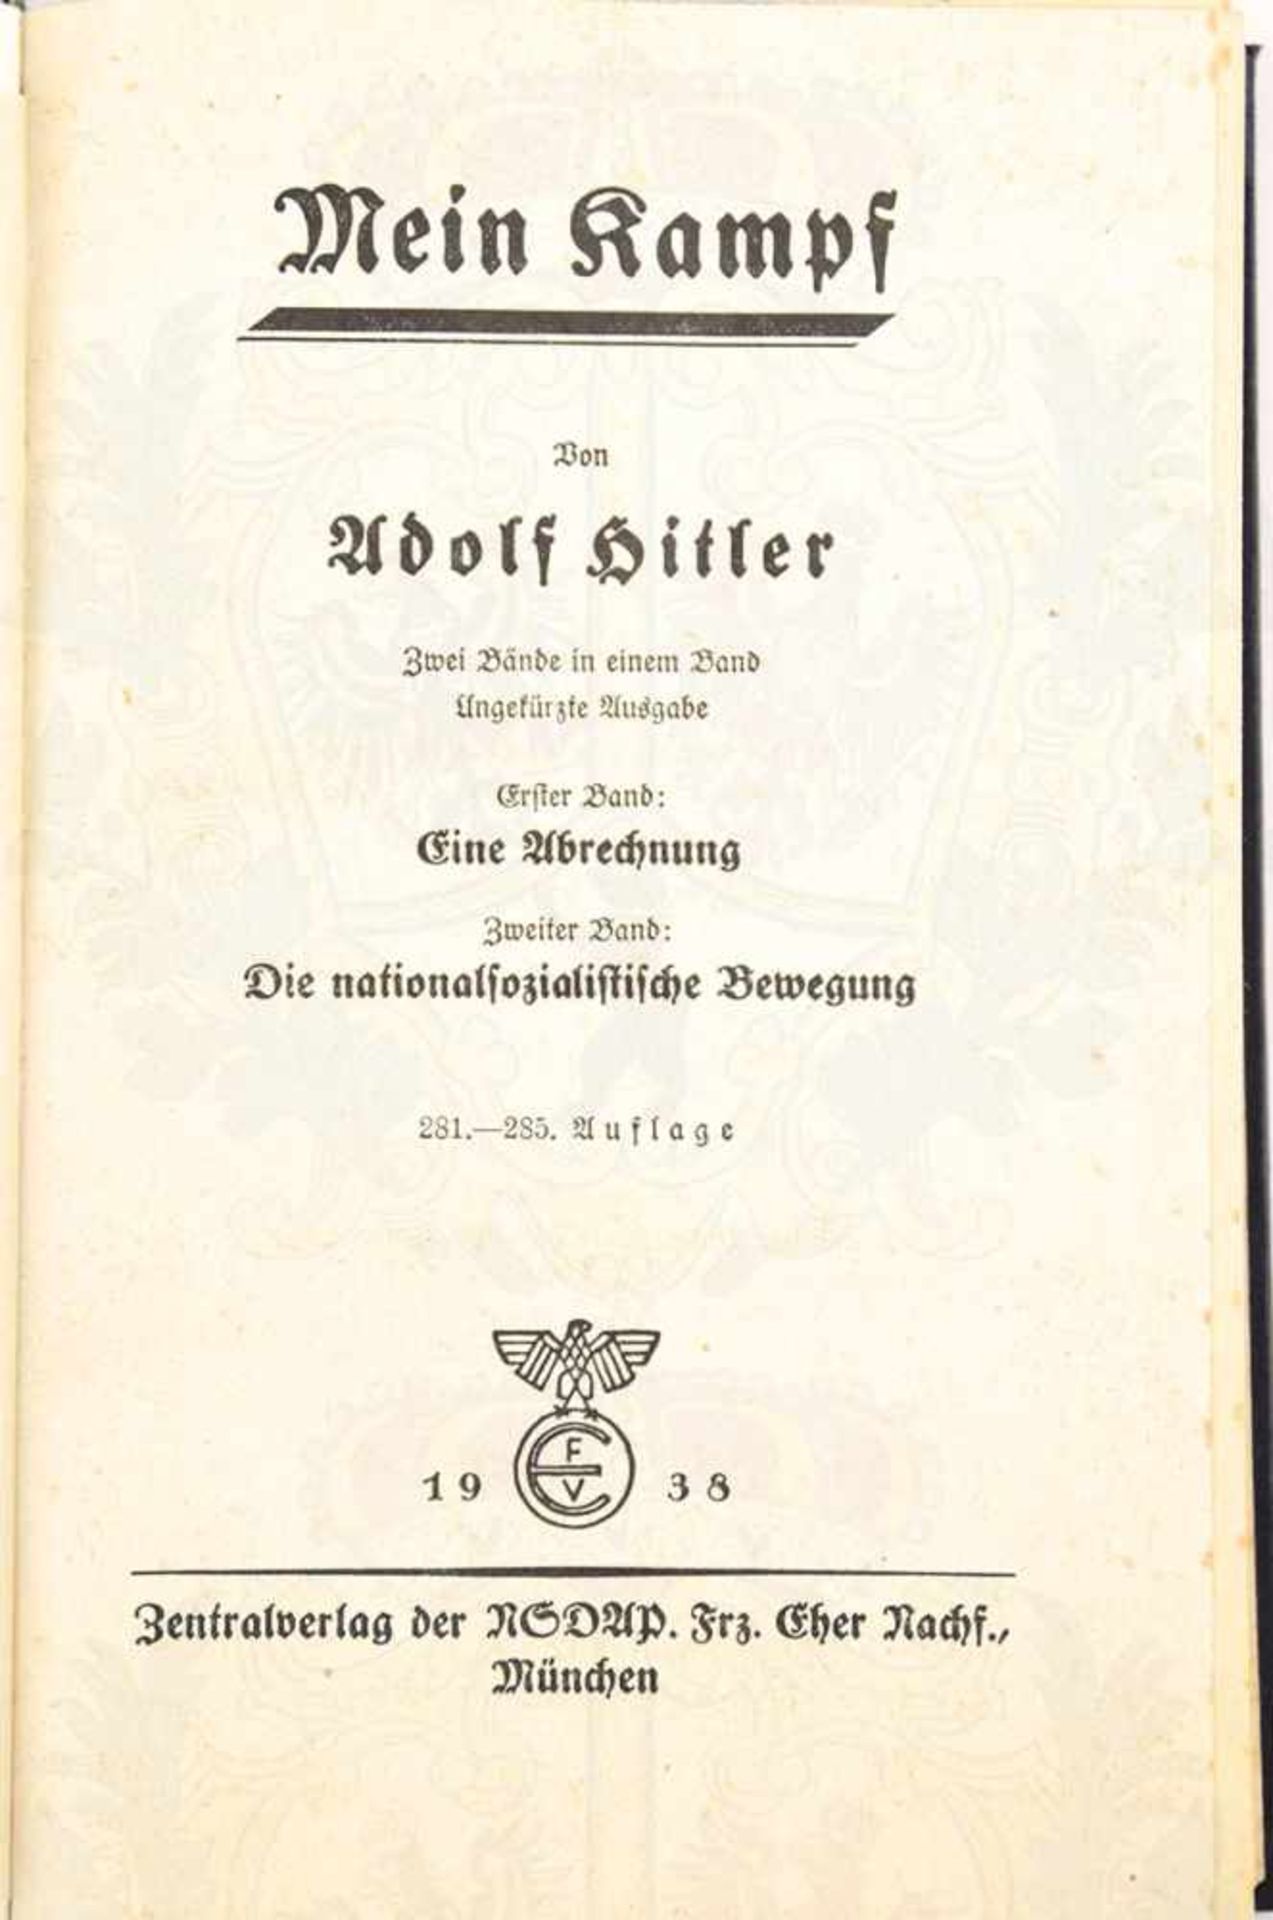 MEIN KAMPF, Adolf Hitler, Volksausgabe, Eher Verlag, 1938, 781 S., Porträtbild, blaues goldgepr. - Bild 3 aus 3